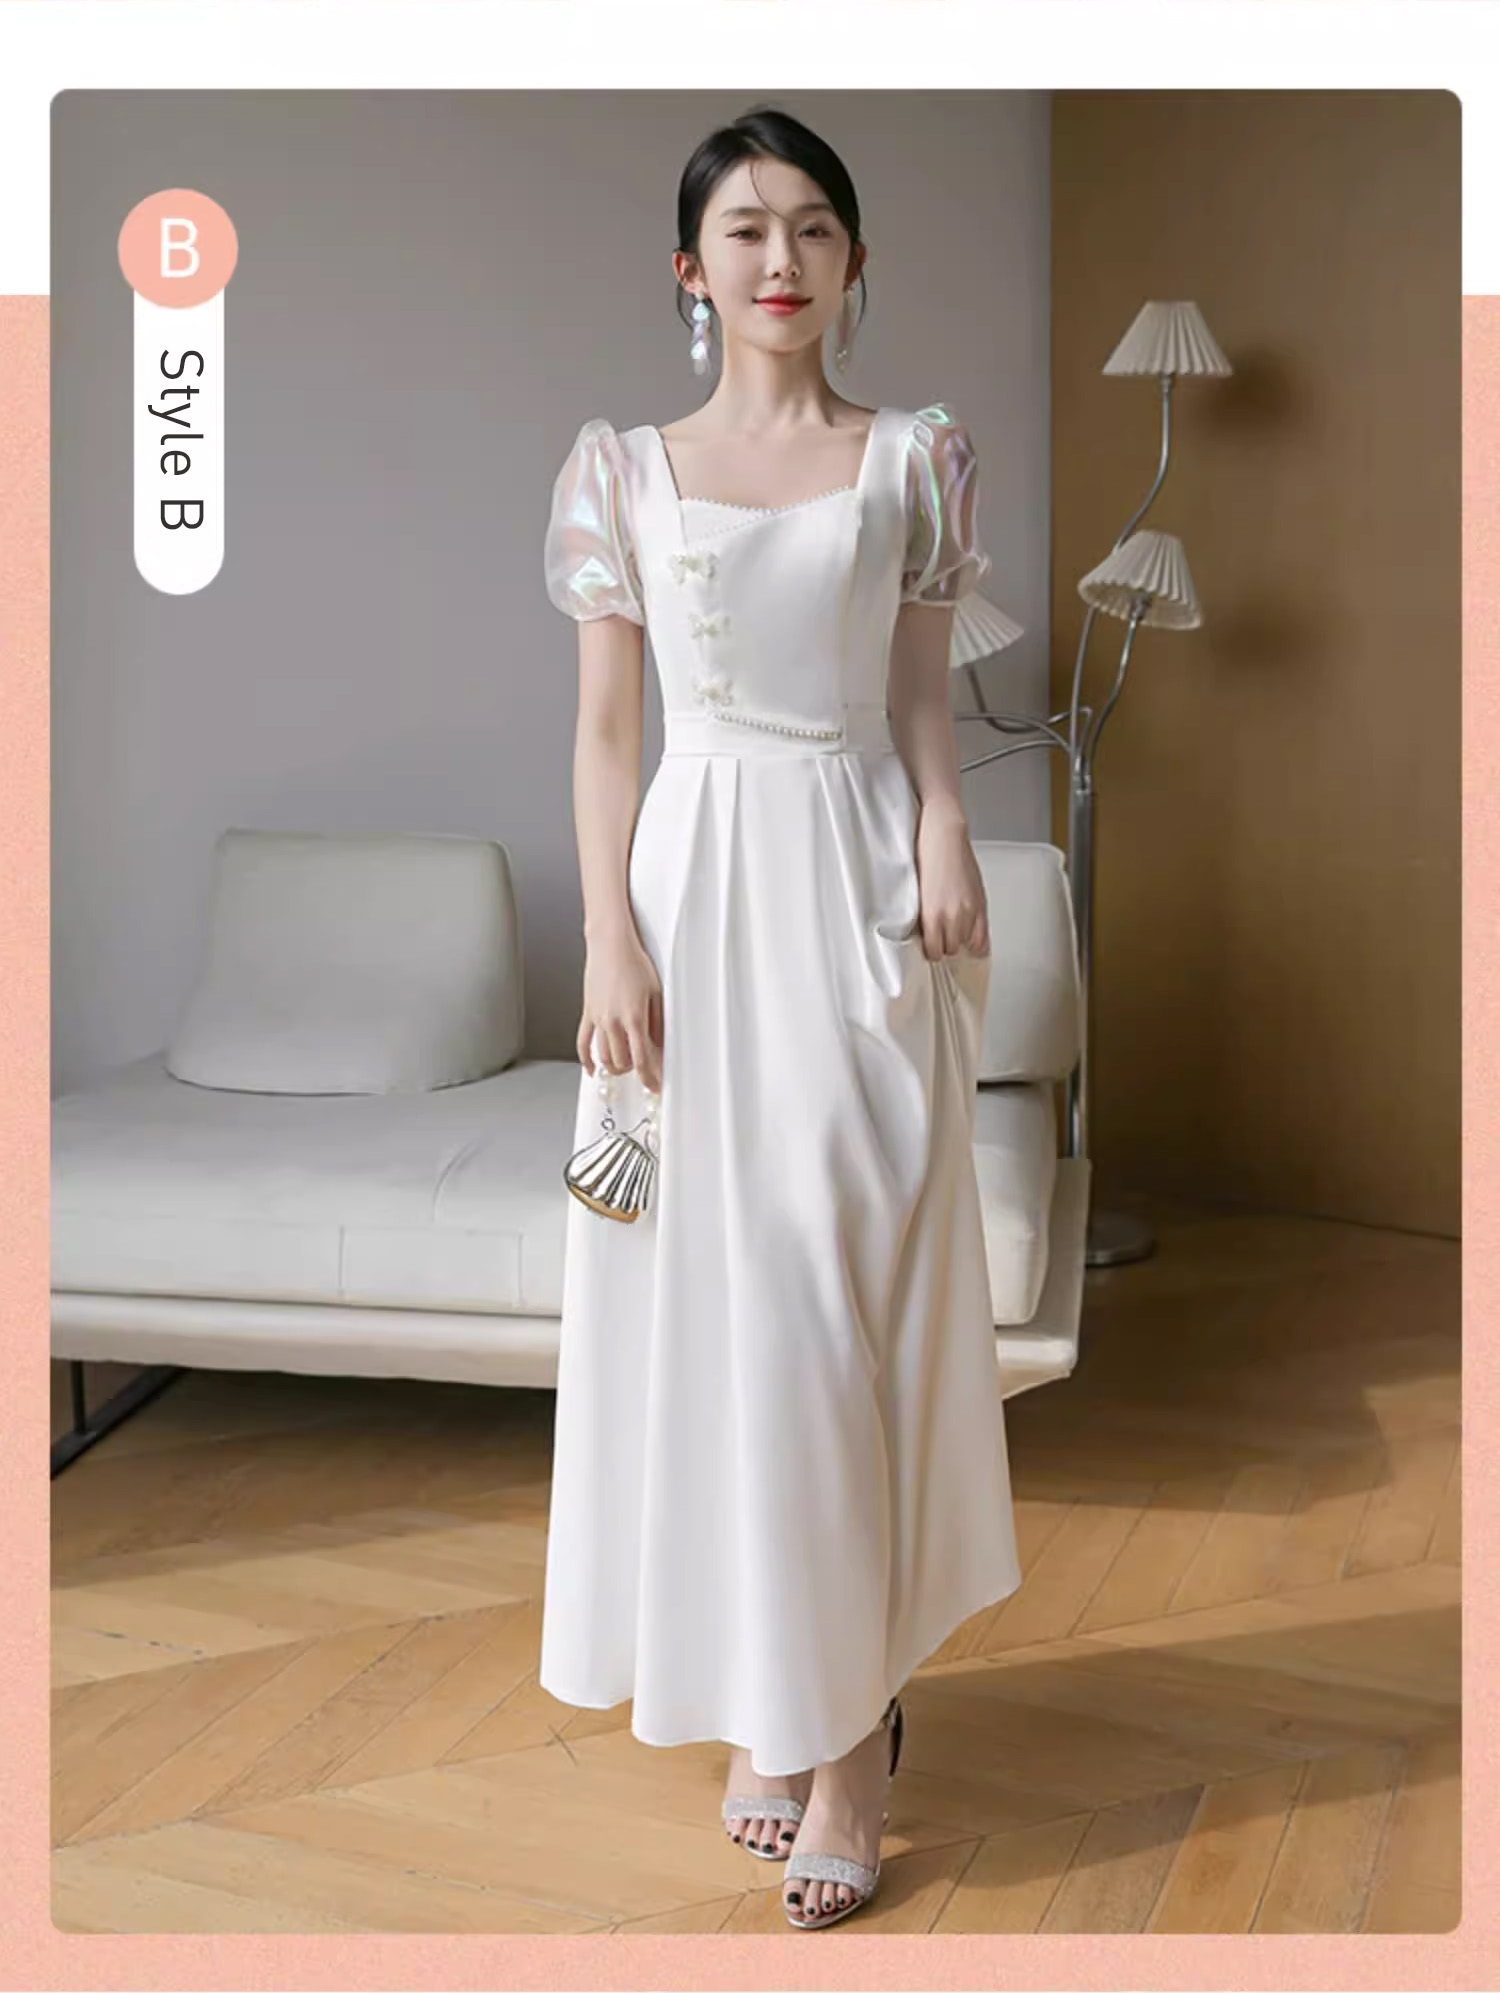 Unique-White-Wedding-Bridal-Party-Attire-Long-Dress-Evening-Gown17